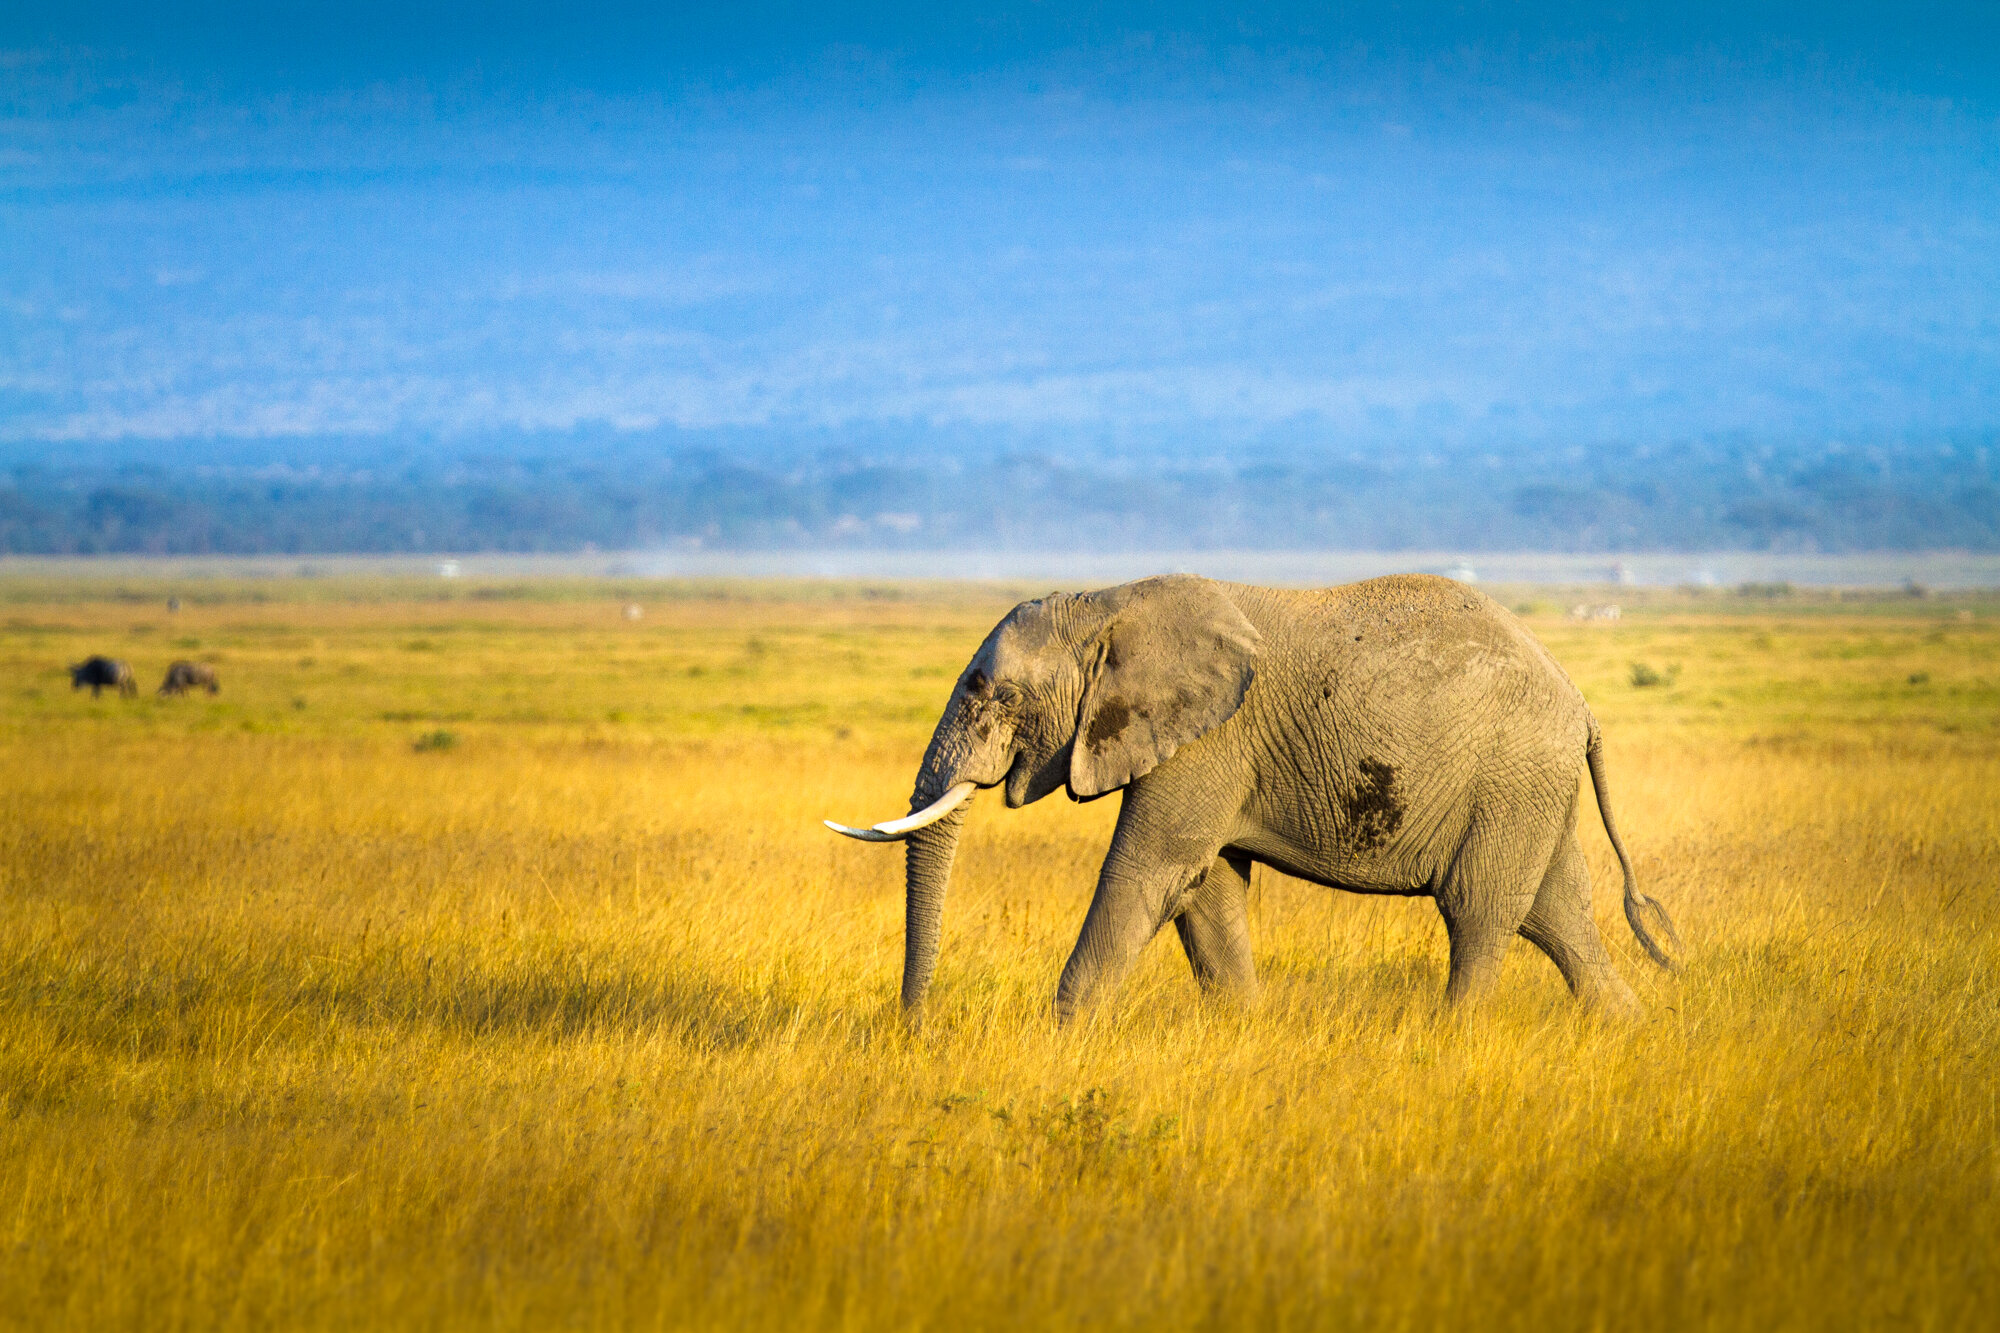  Elephant in Amboseli National Park, Kenya 